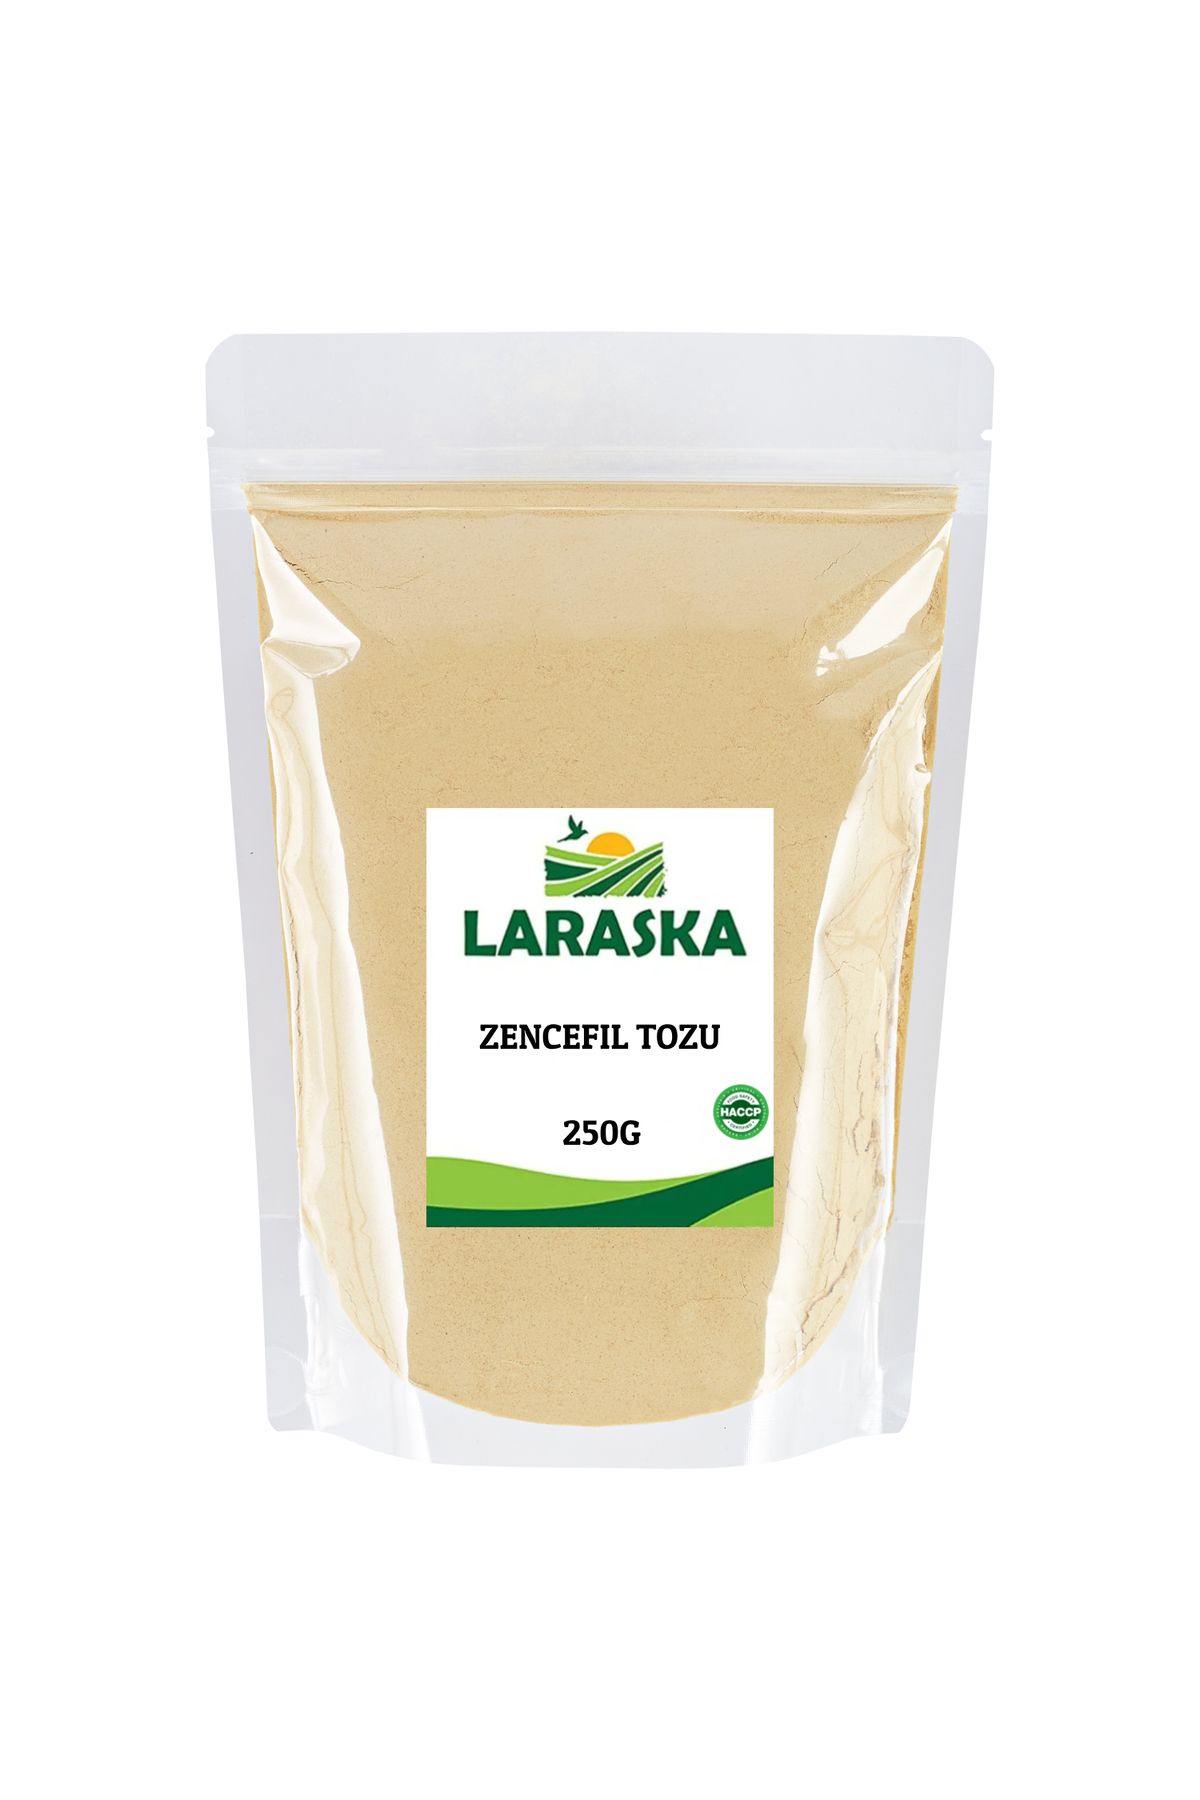 Laraska Zencefil Tozu (öğütülmüş) 250g- Ginger Ground 250g- Ginger Powder 250g